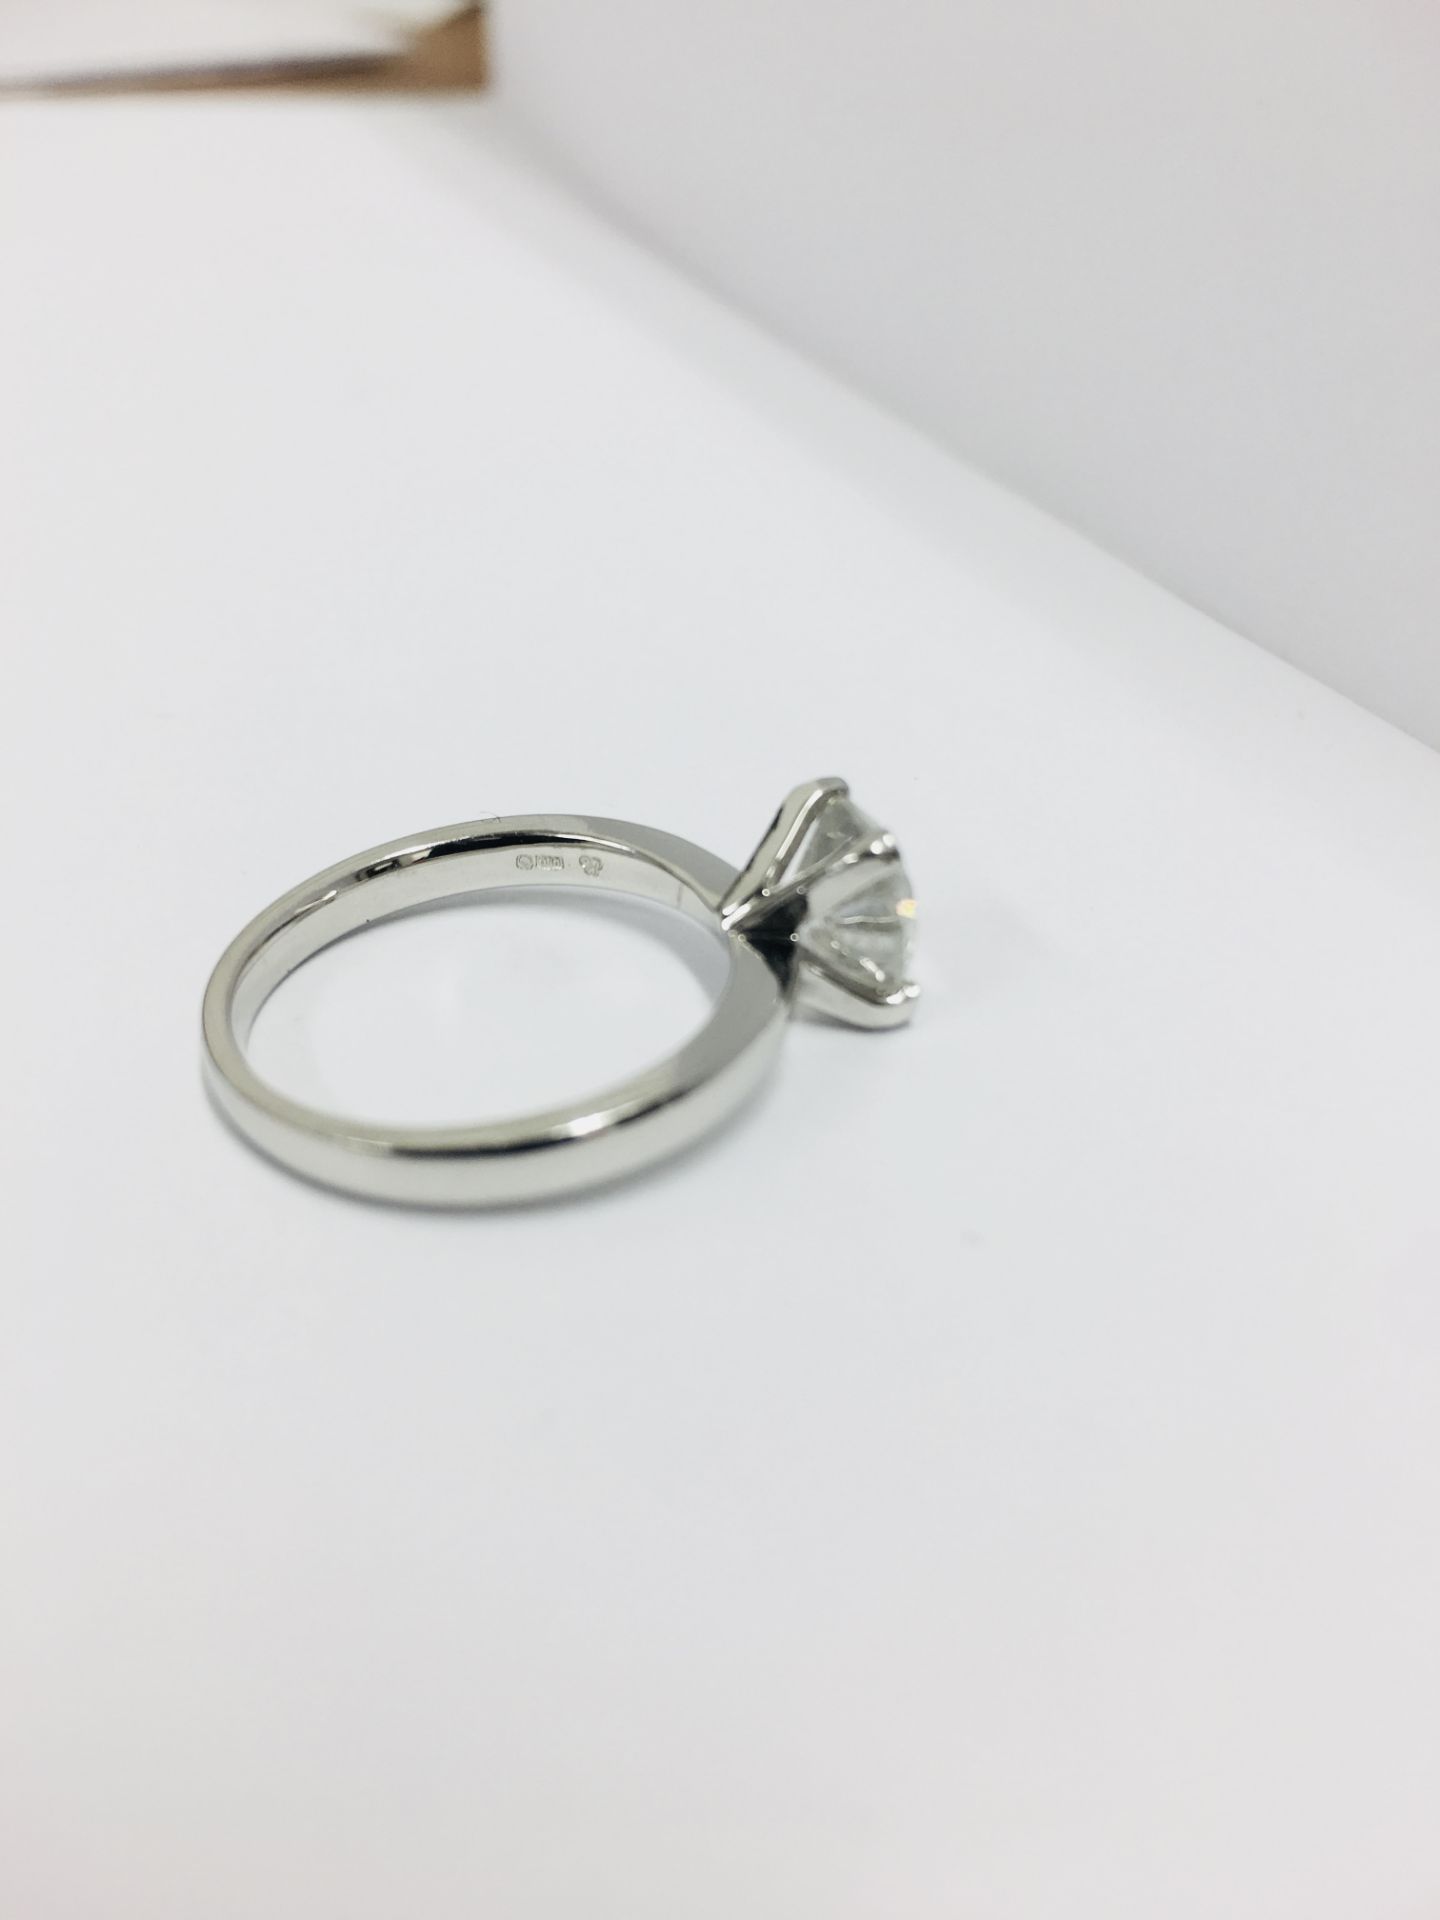 1.37ct Brilliant cut diamond solitaire ring,1.37ct diamond h colour i2 clarity (enhanced),platinum - Image 2 of 2